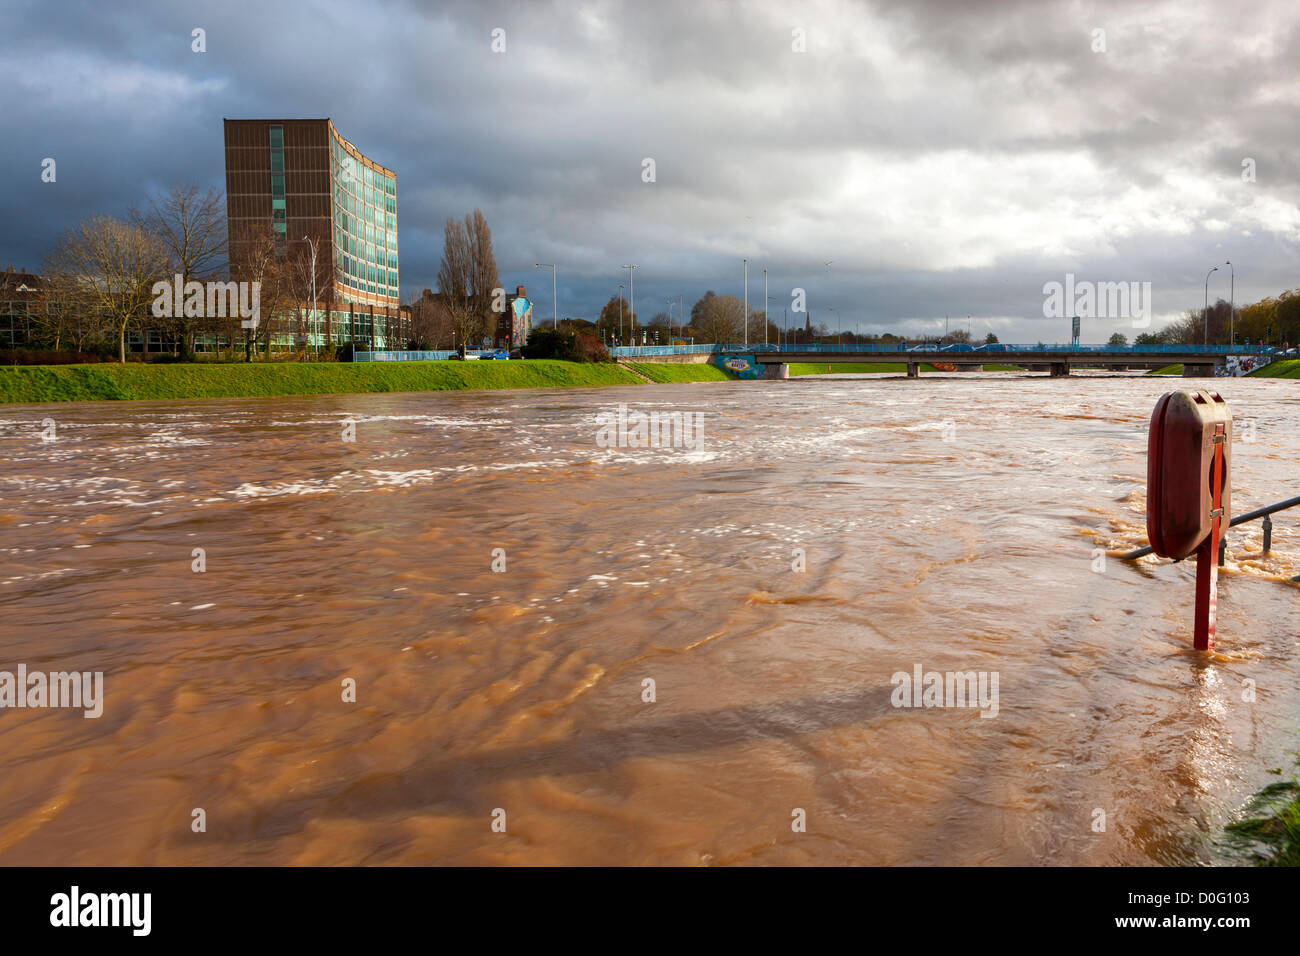 Exeter, Royaume-Uni. 25 novembre, 2012. Les eaux boueuses de la rivière Exe après de fortes pluies dans le Devon la nuit dernière. Banque D'Images